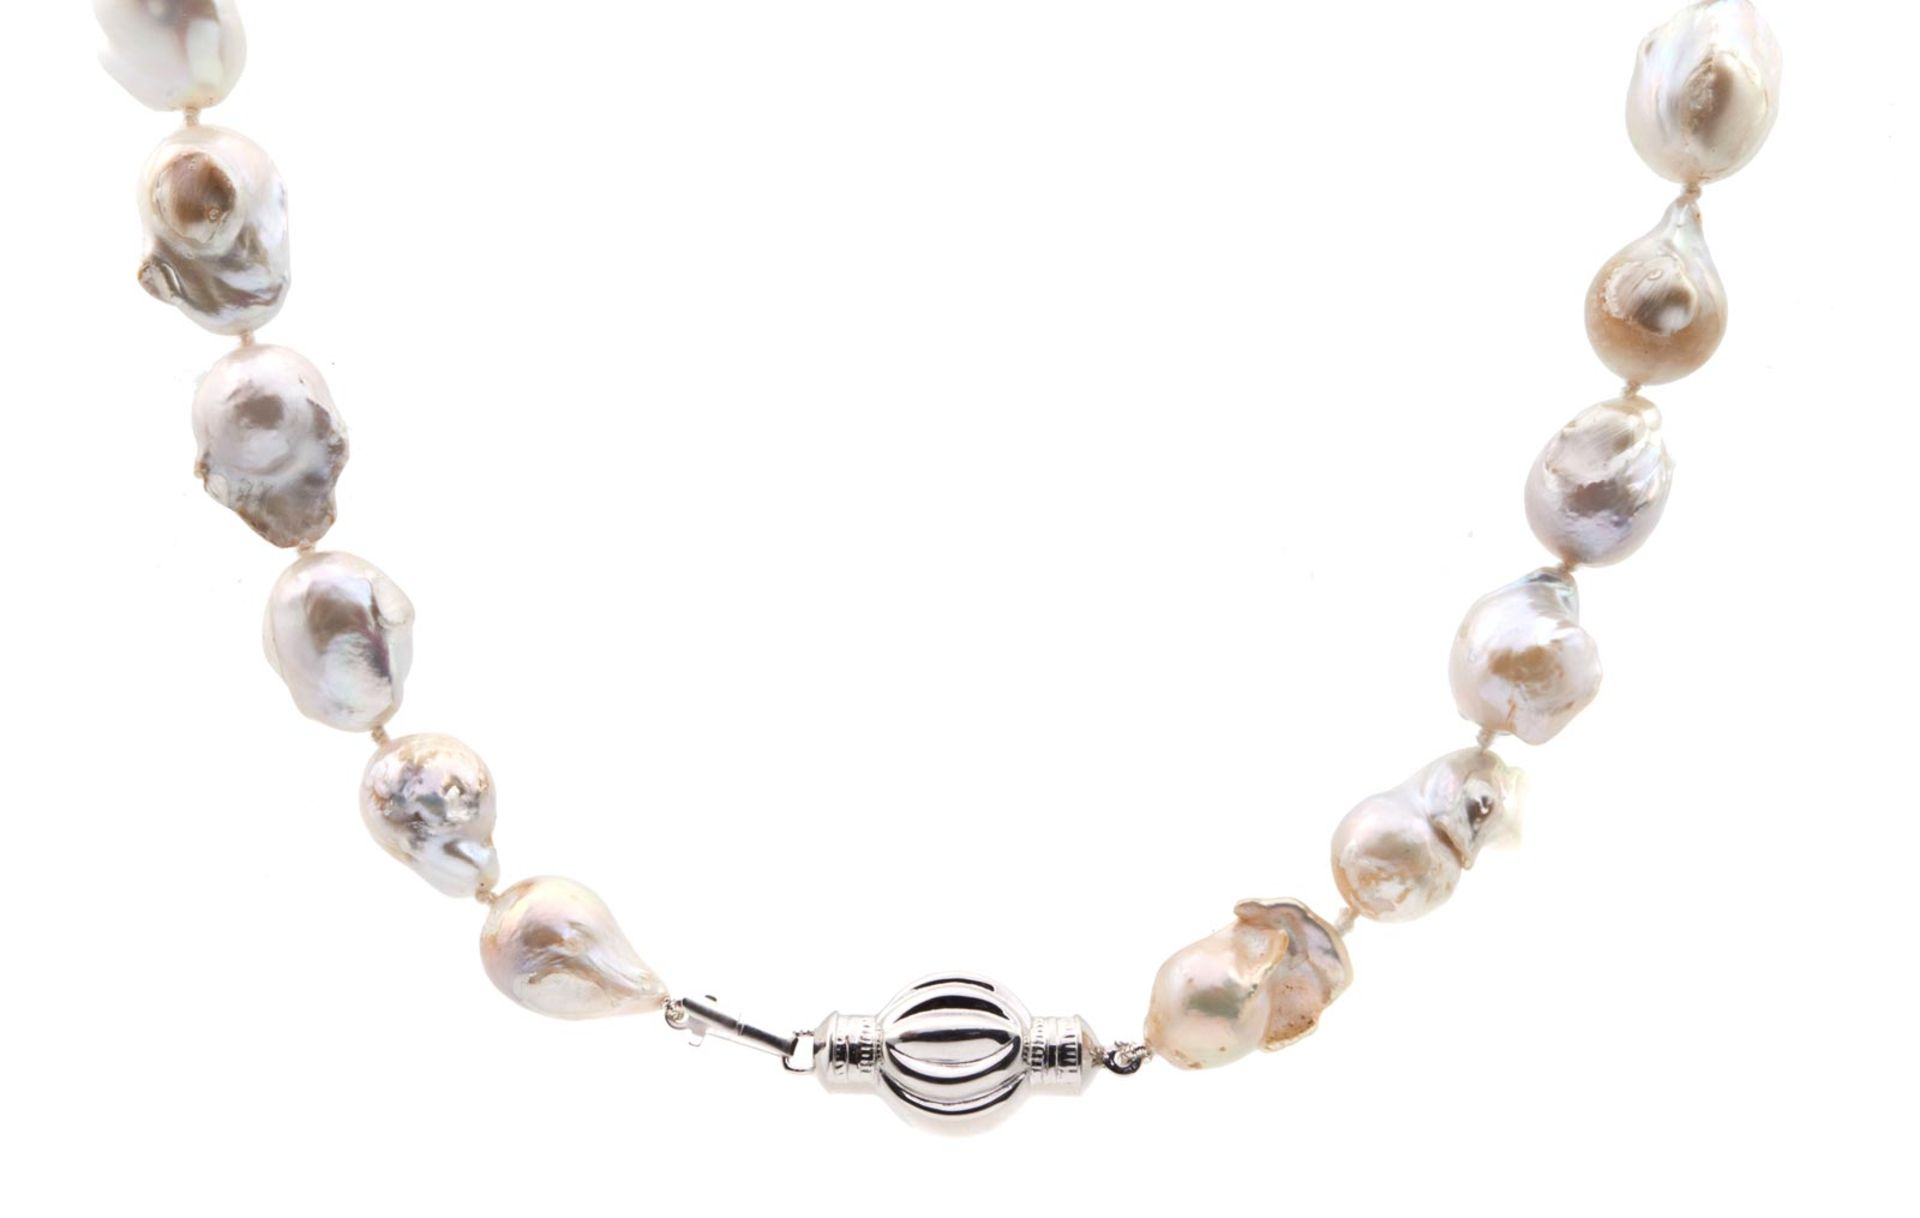 NECKLACE De perlas barrocas con cierre en plata. 50,5 cm. largo y 92,9 gr.